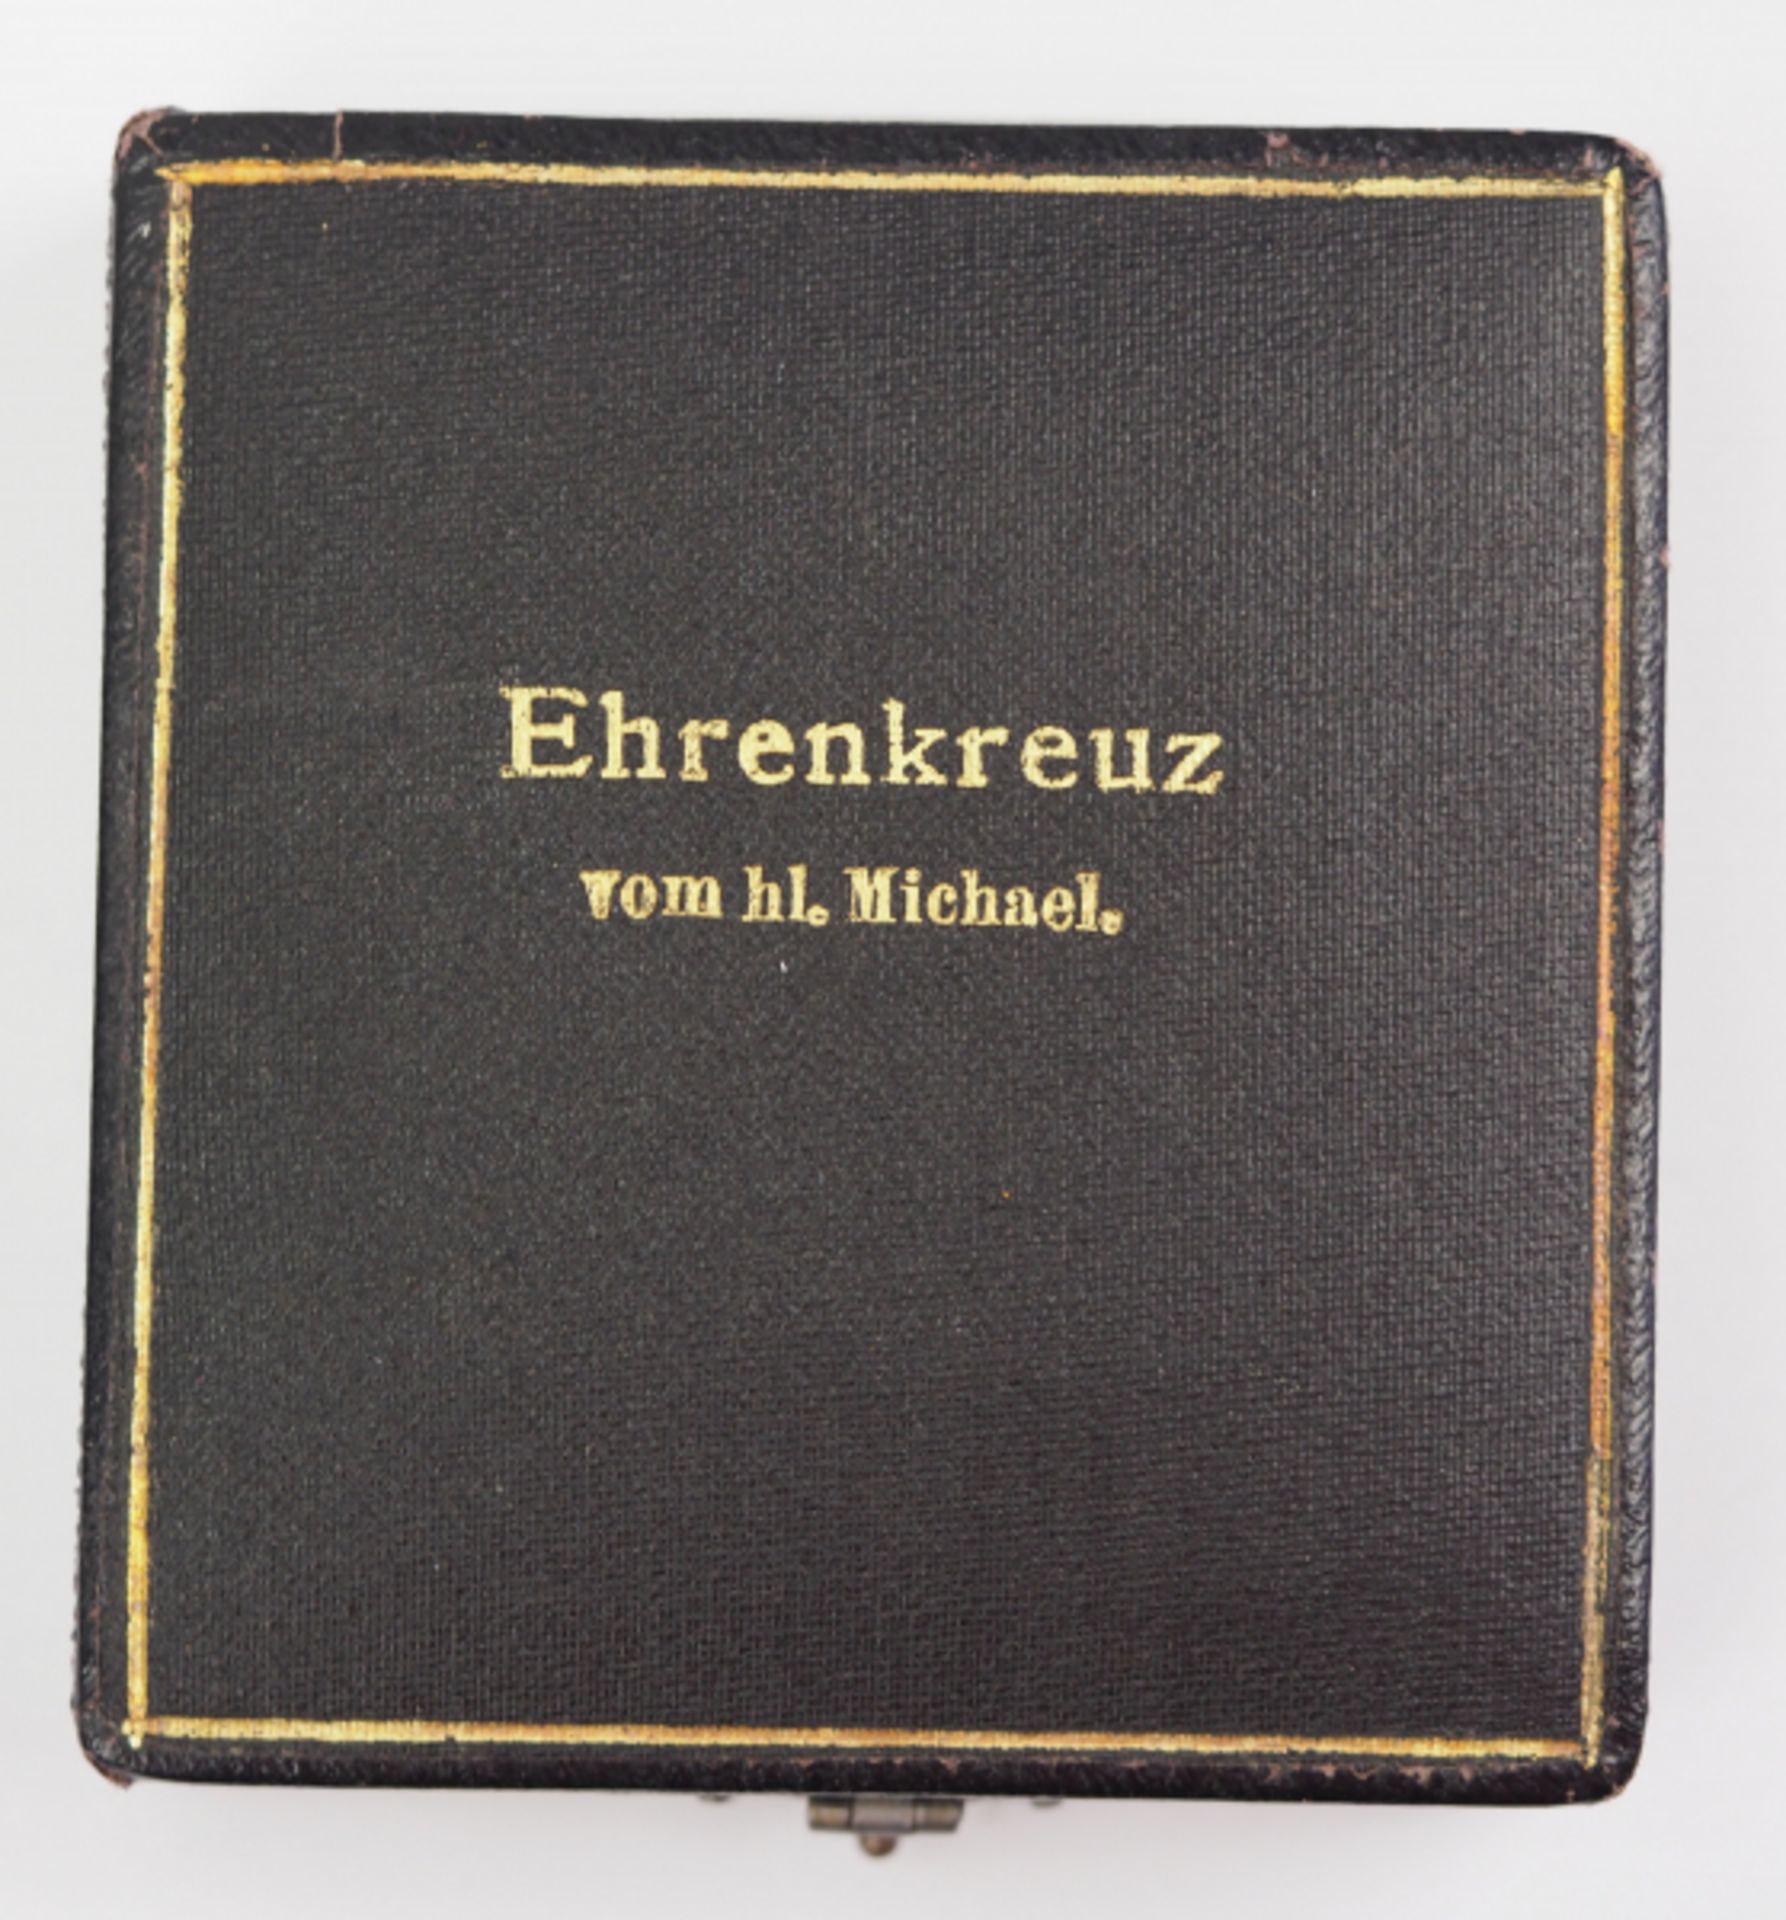 Bayern: Verdienstorden vom Heiligen Michael, Ehrenkreuz (1910-1918), Etui.Schwarzes - Bild 2 aus 5